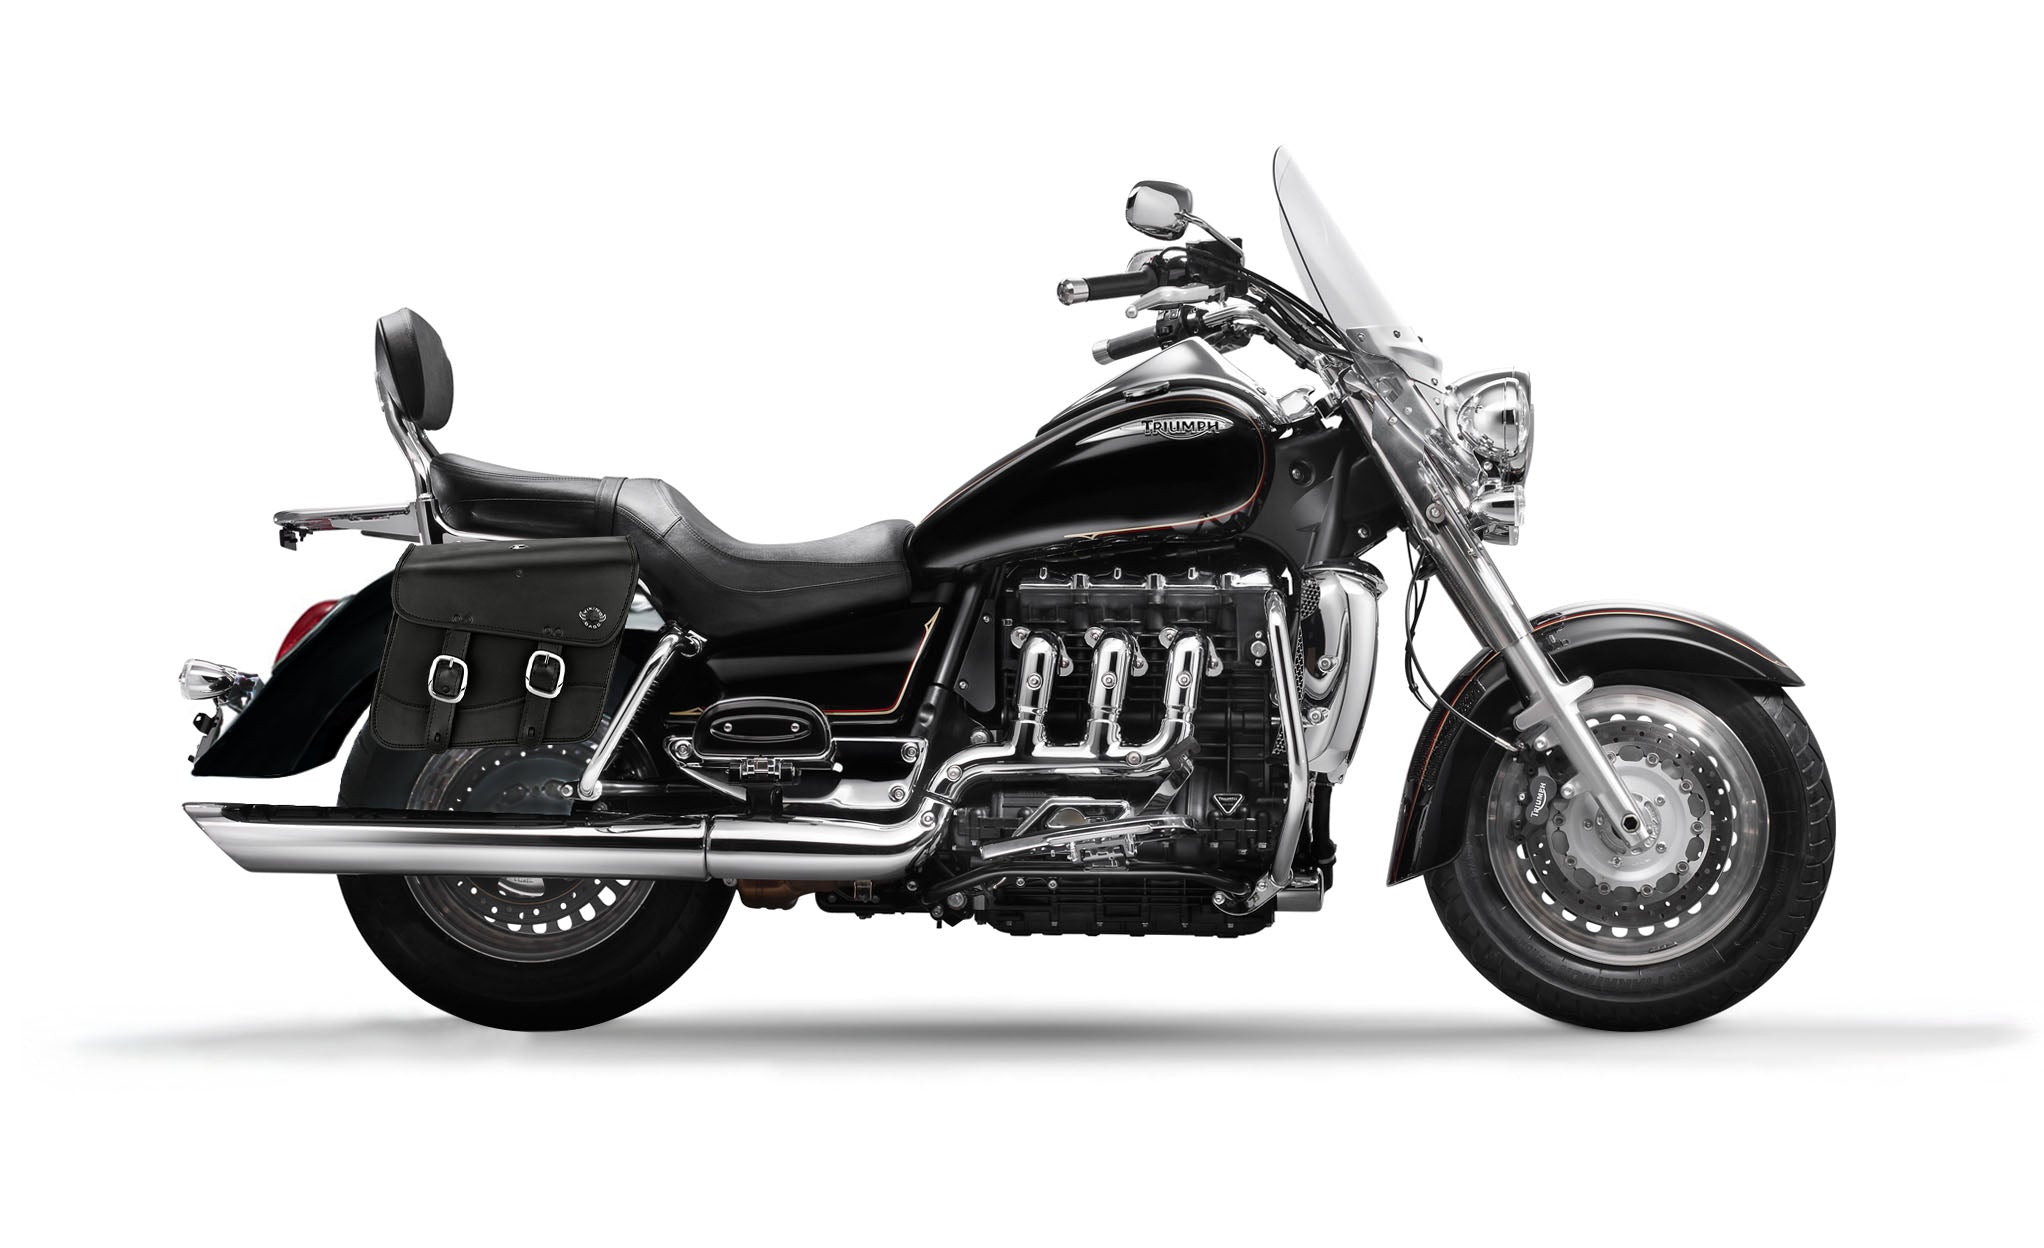 Viking Thor Medium Triumph Rocket Iii Touring Leather Motorcycle Saddlebags on Bike Photo @expand